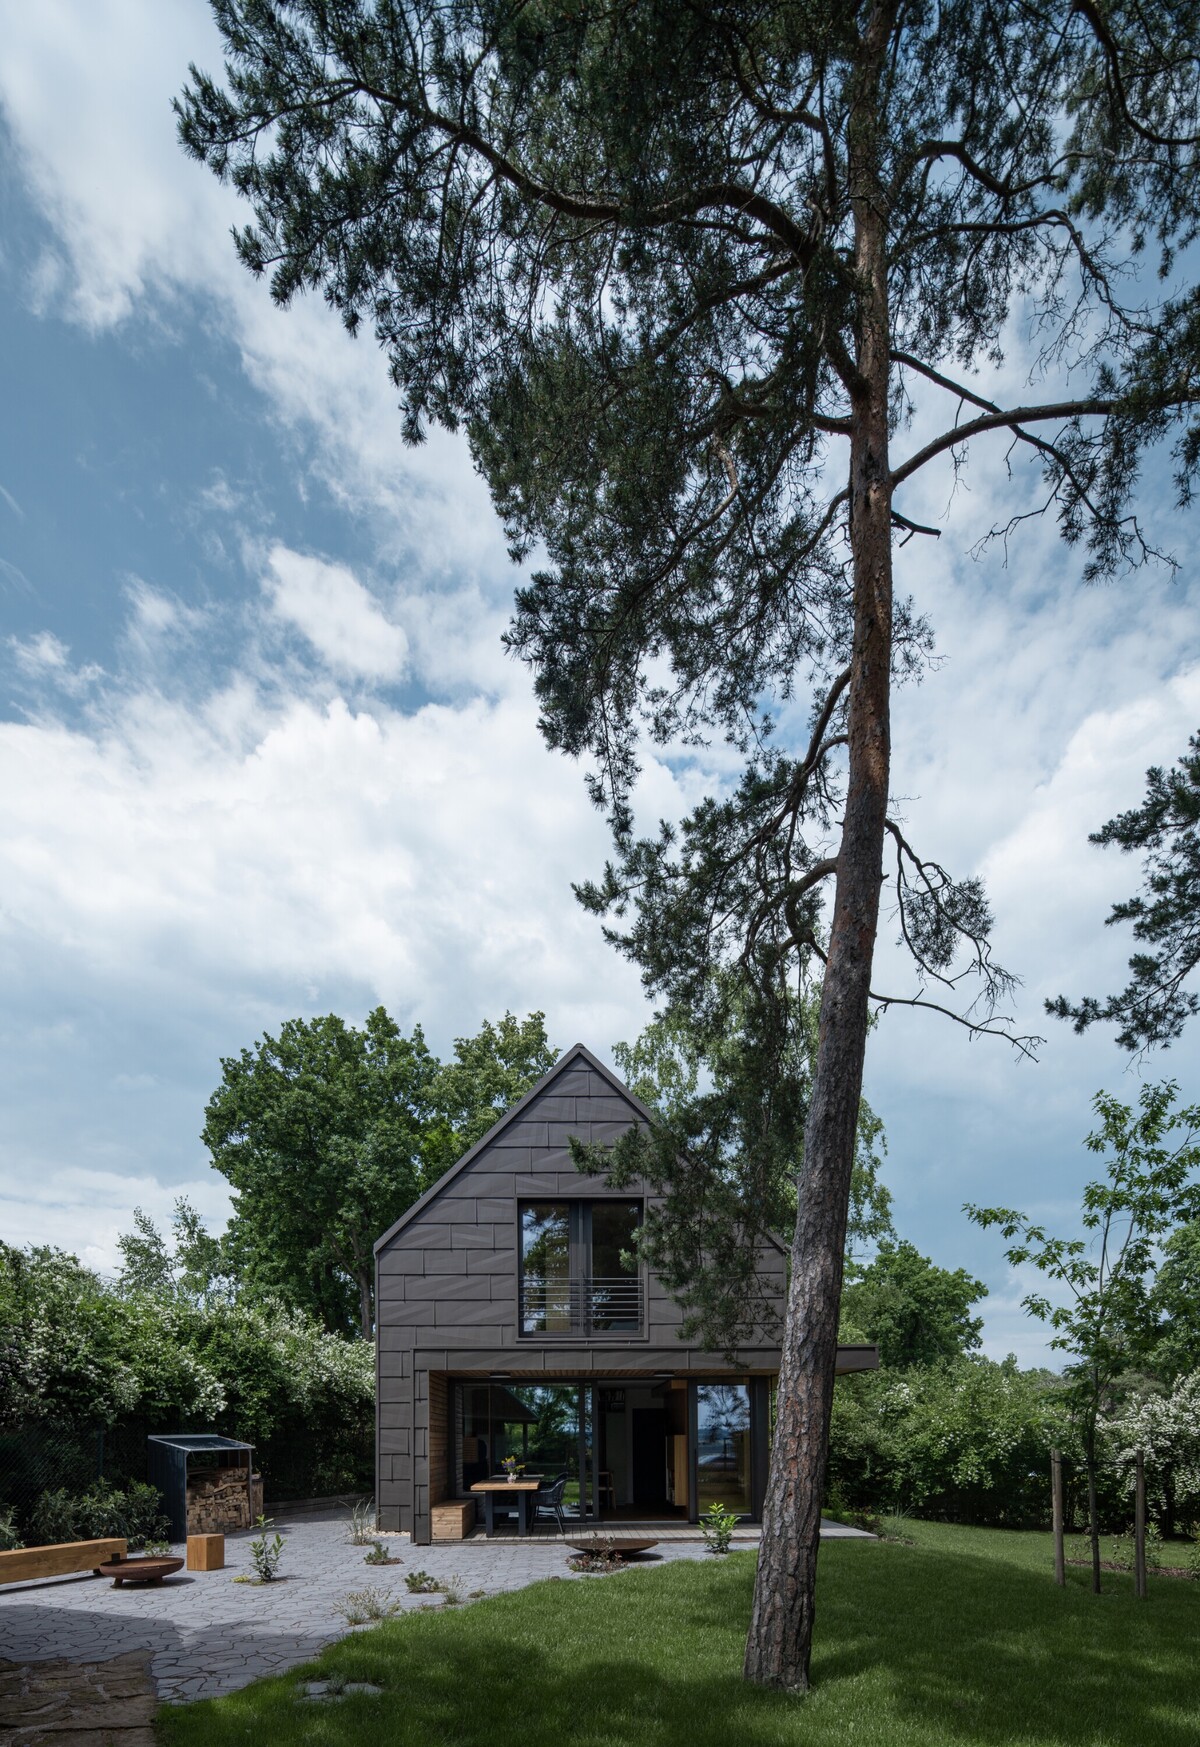 Moderná chata na rodinnú rekreáciu, ktorá ponúka pokoj v lesoch neďaleko Prahy. 